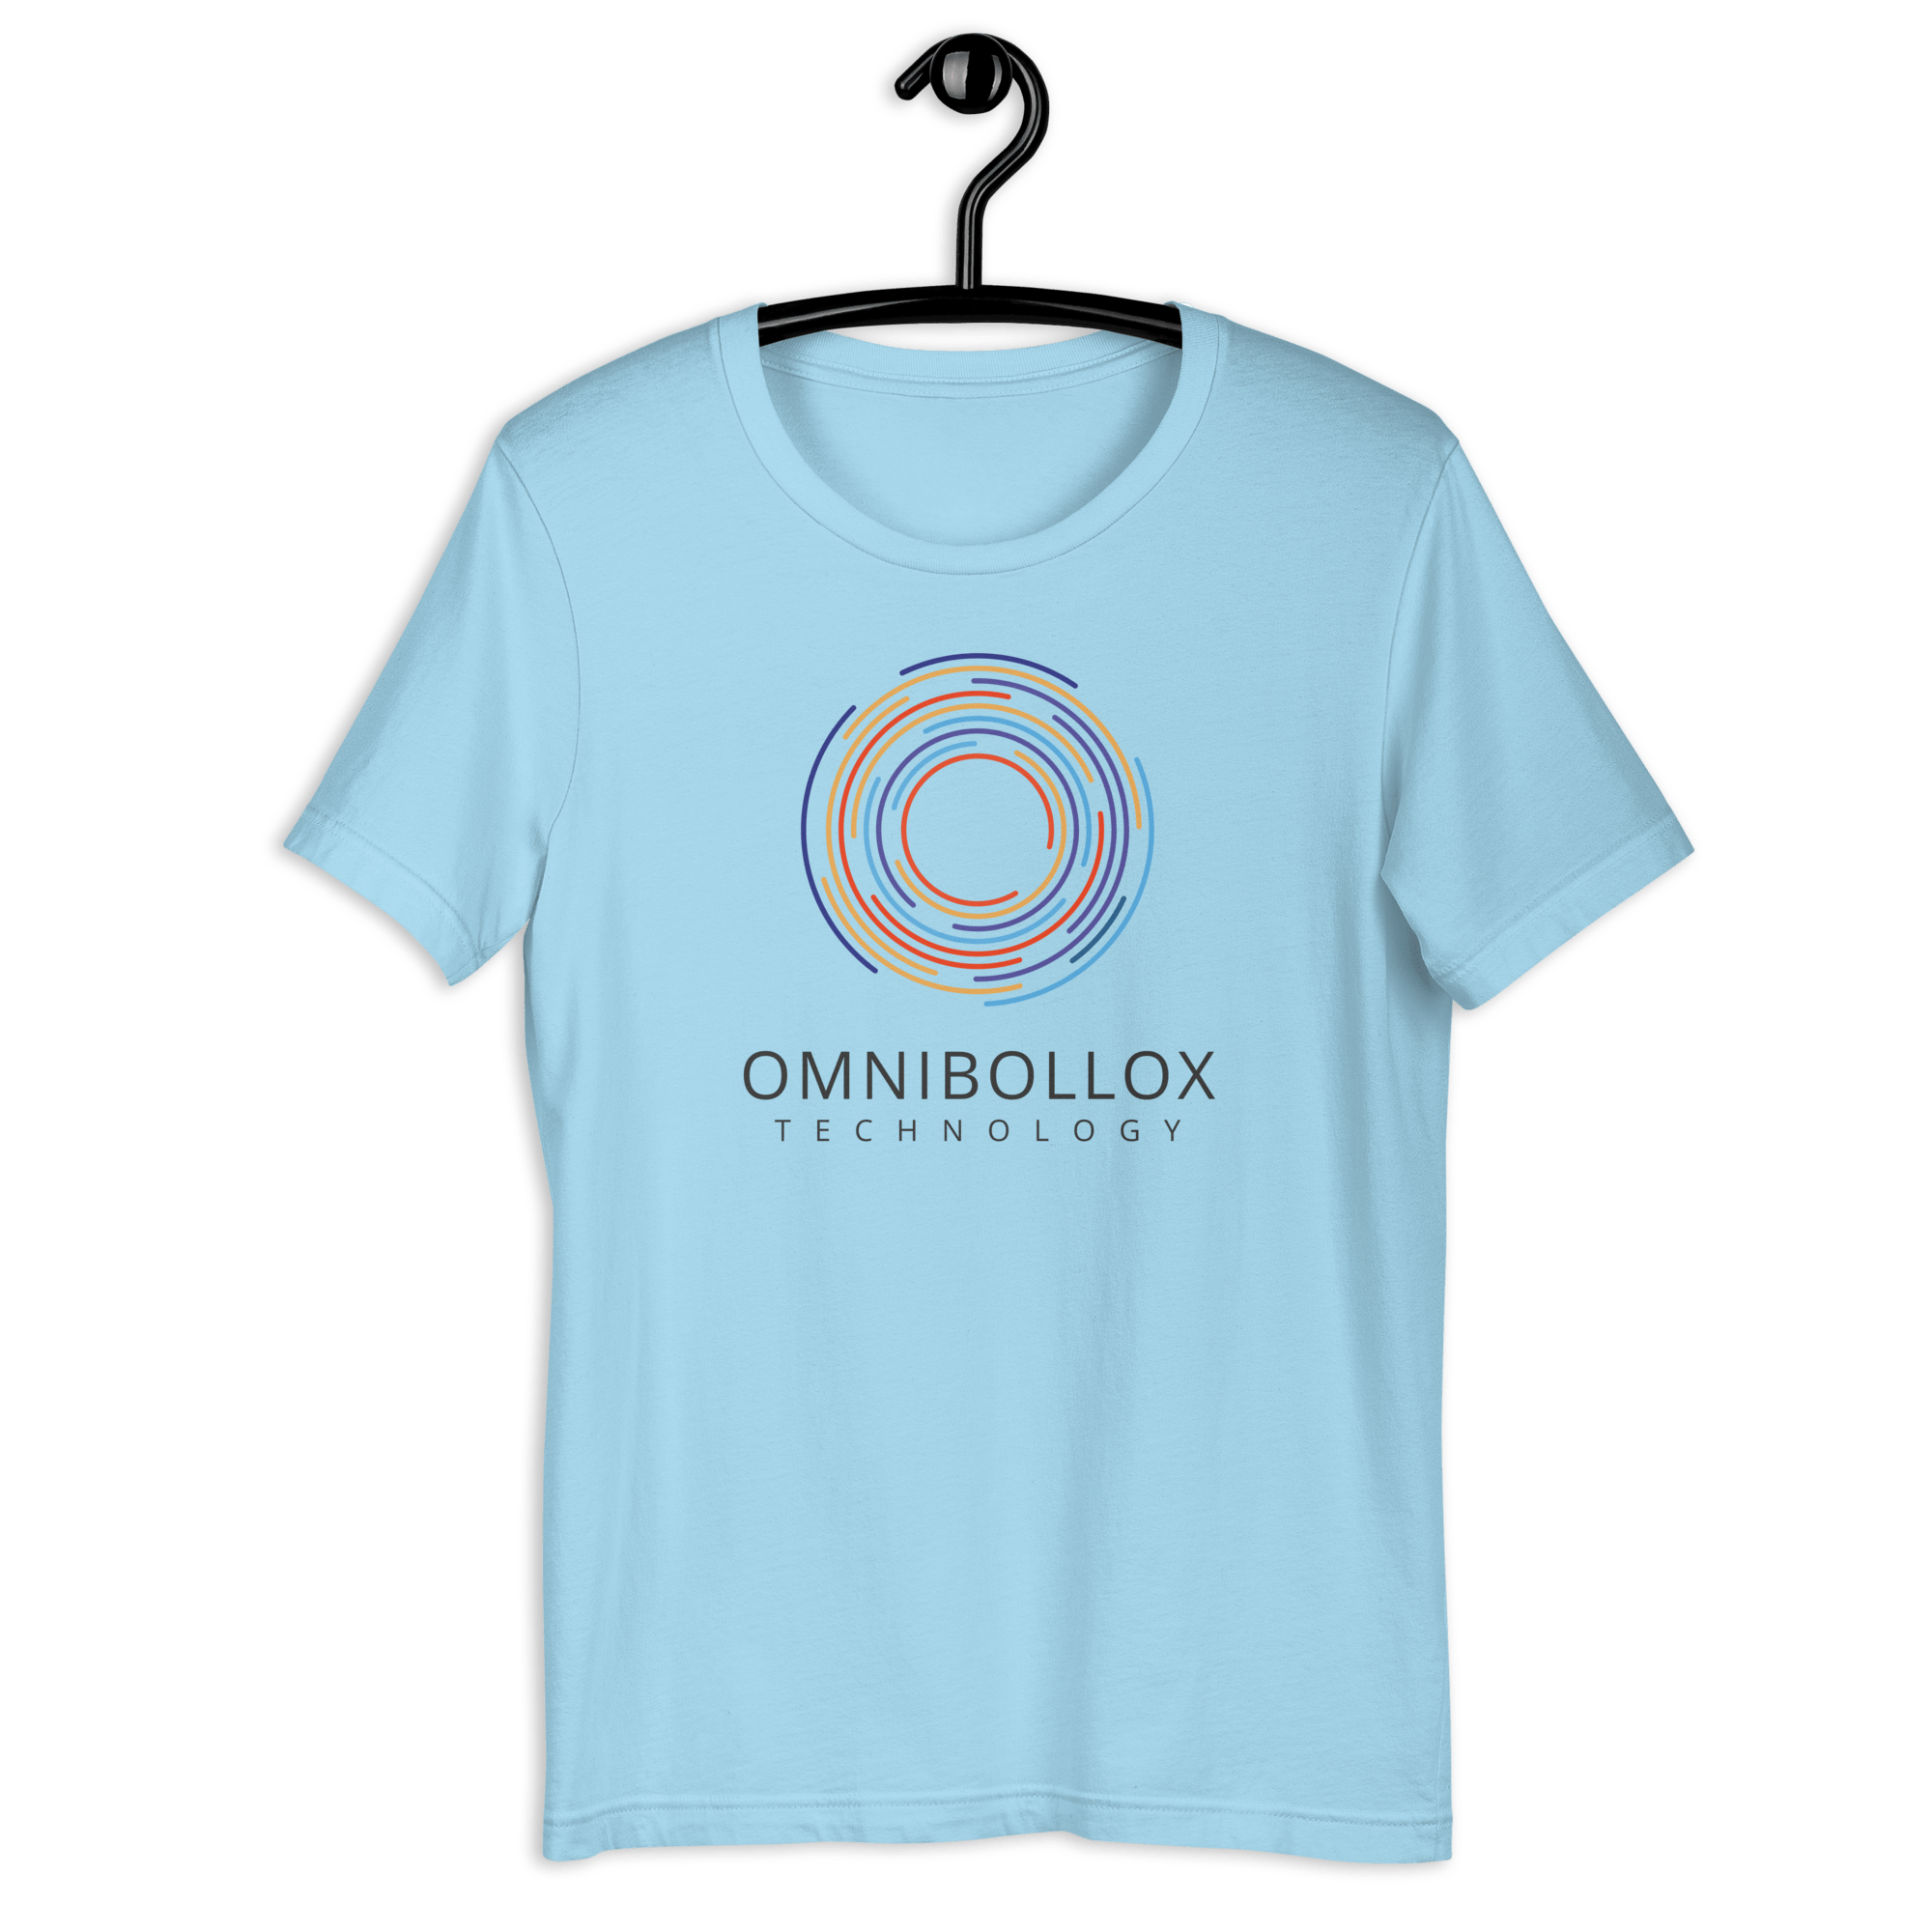 Omnibollox Technology T-shirt | Unisex Ocean Blue / S Shirts & Tops Jolly & Goode